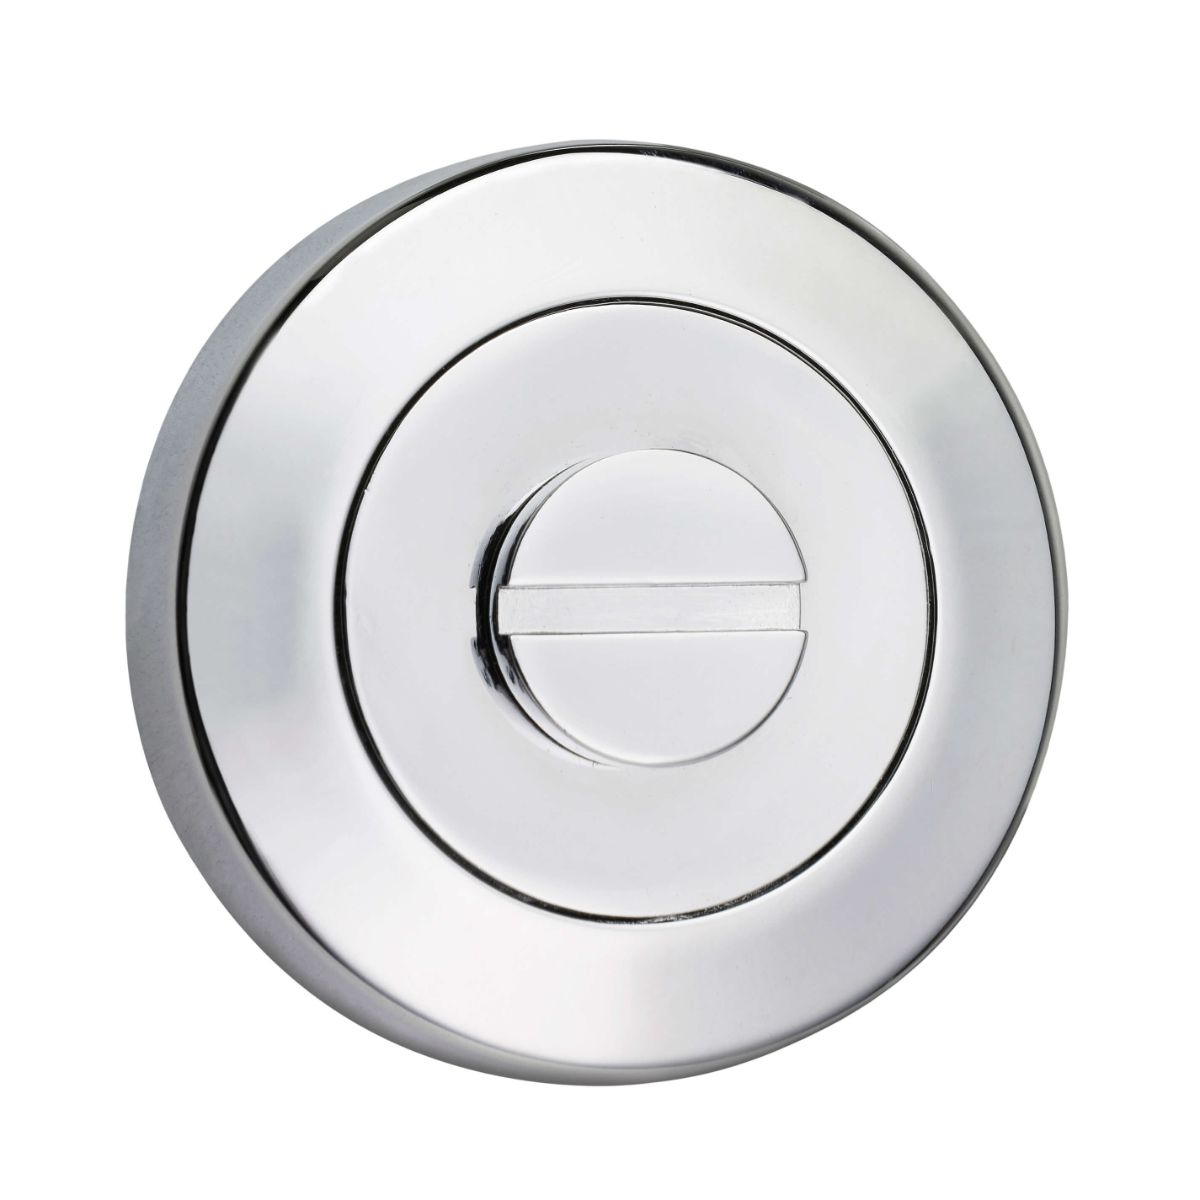 53mm Round Escape Button Escutcheon - Chrome Plate